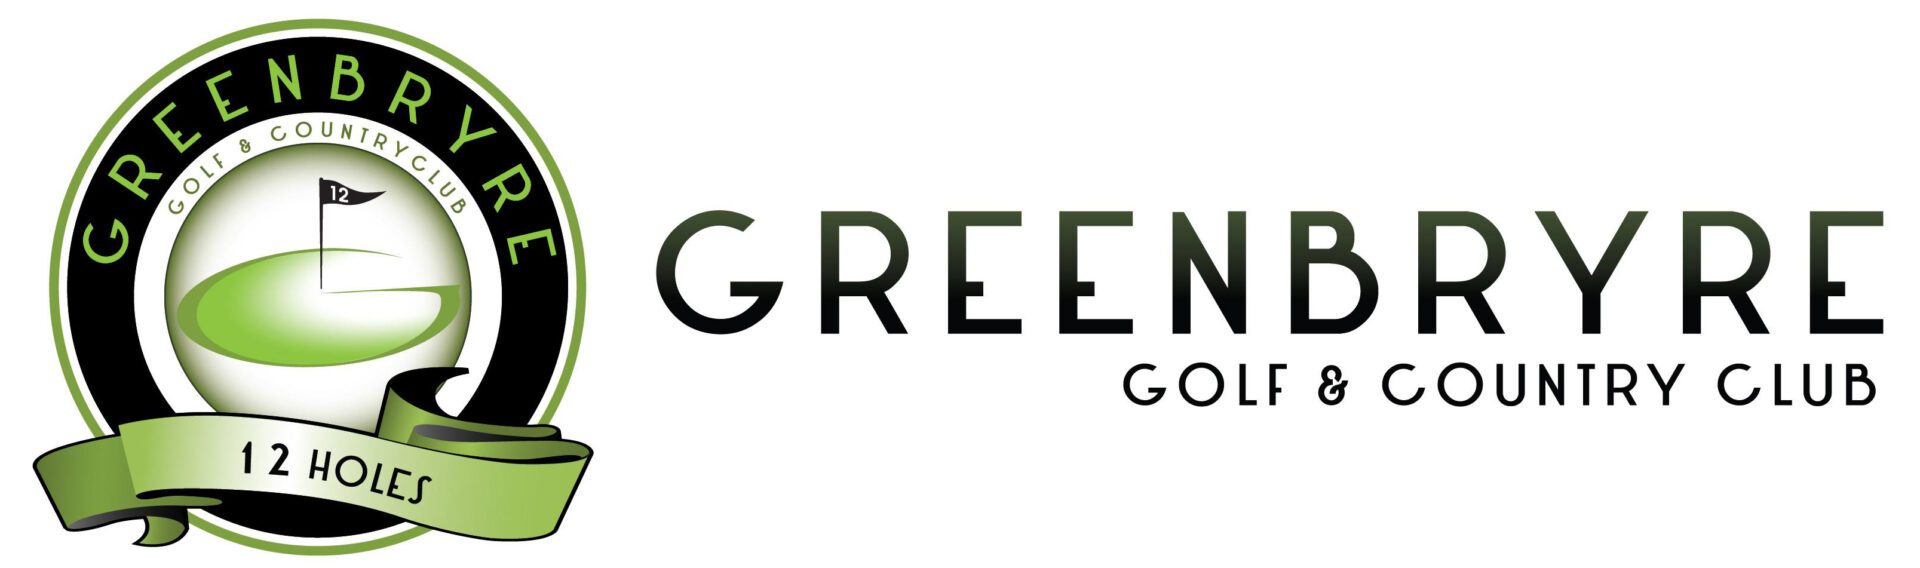 Greenbryre Golf & Country Club